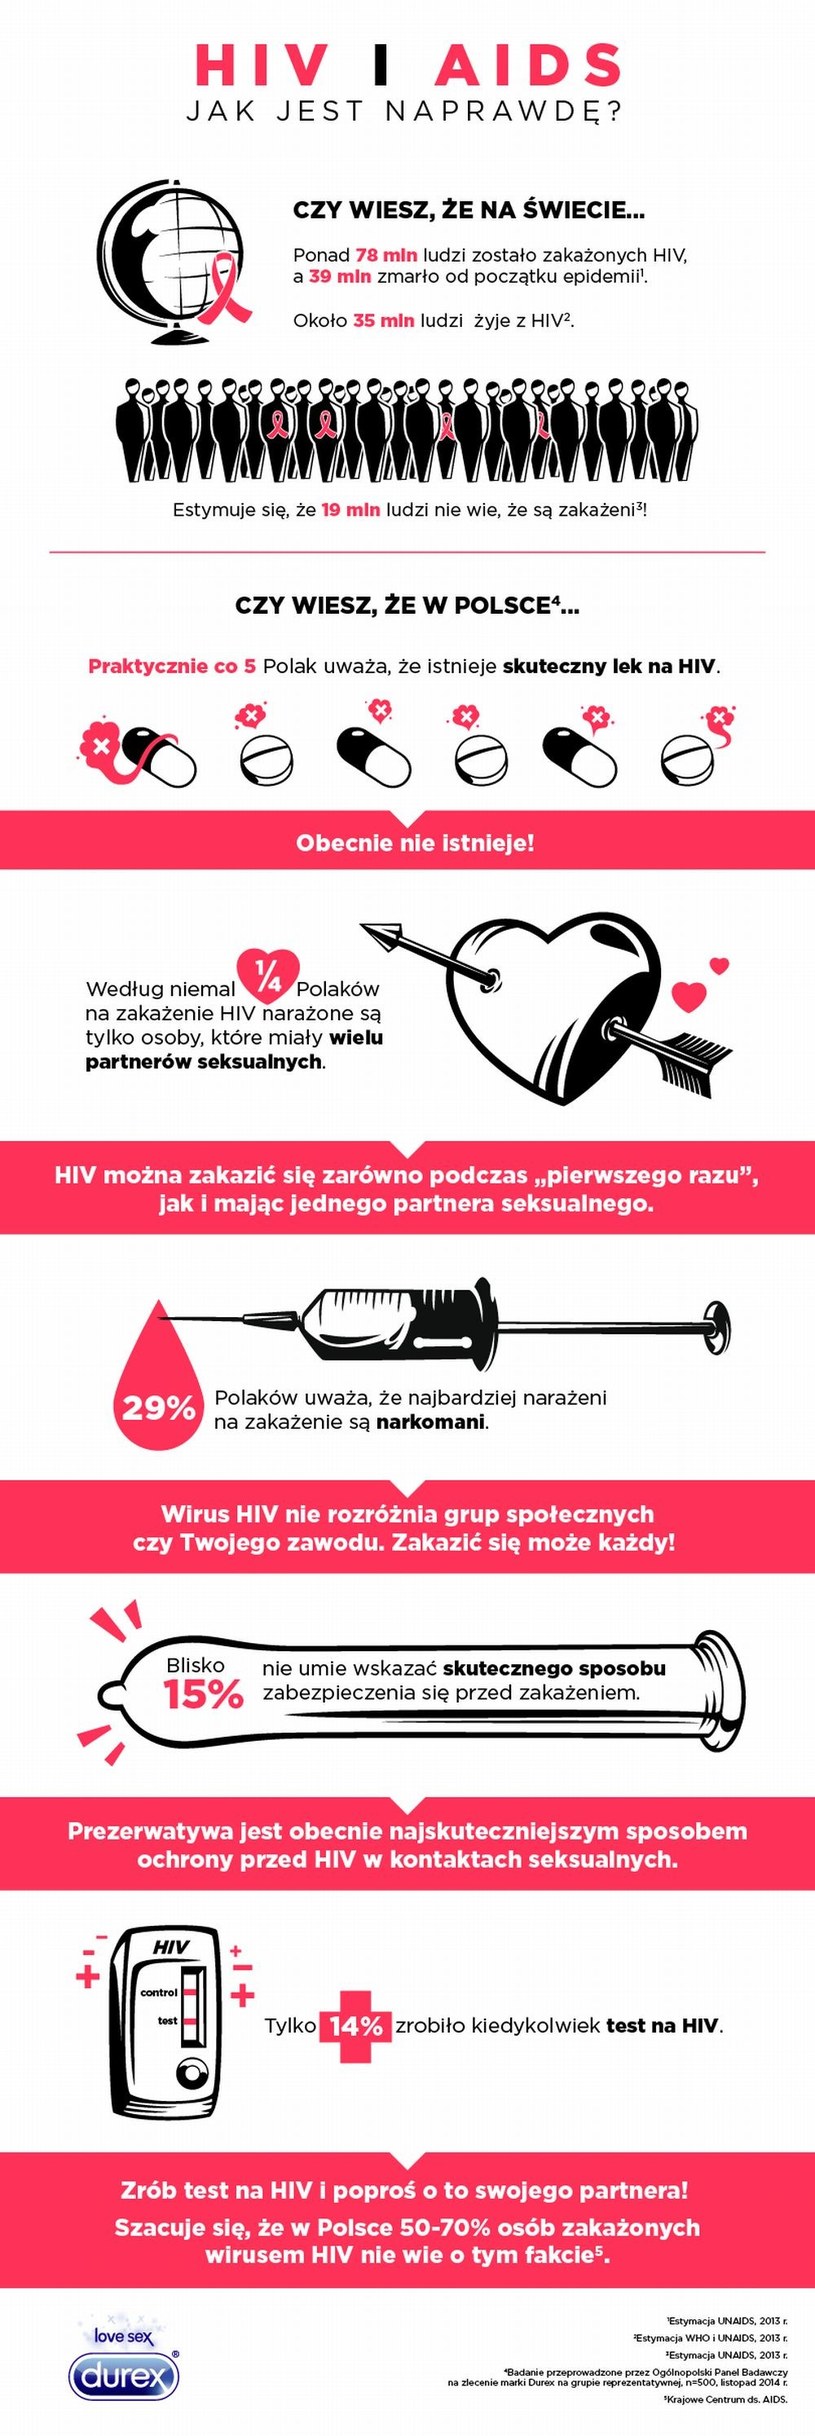 W Polsce nadal są ludzie, którzy wierzą że istnieje skuteczny lek na HIV.. /materiały prasowe